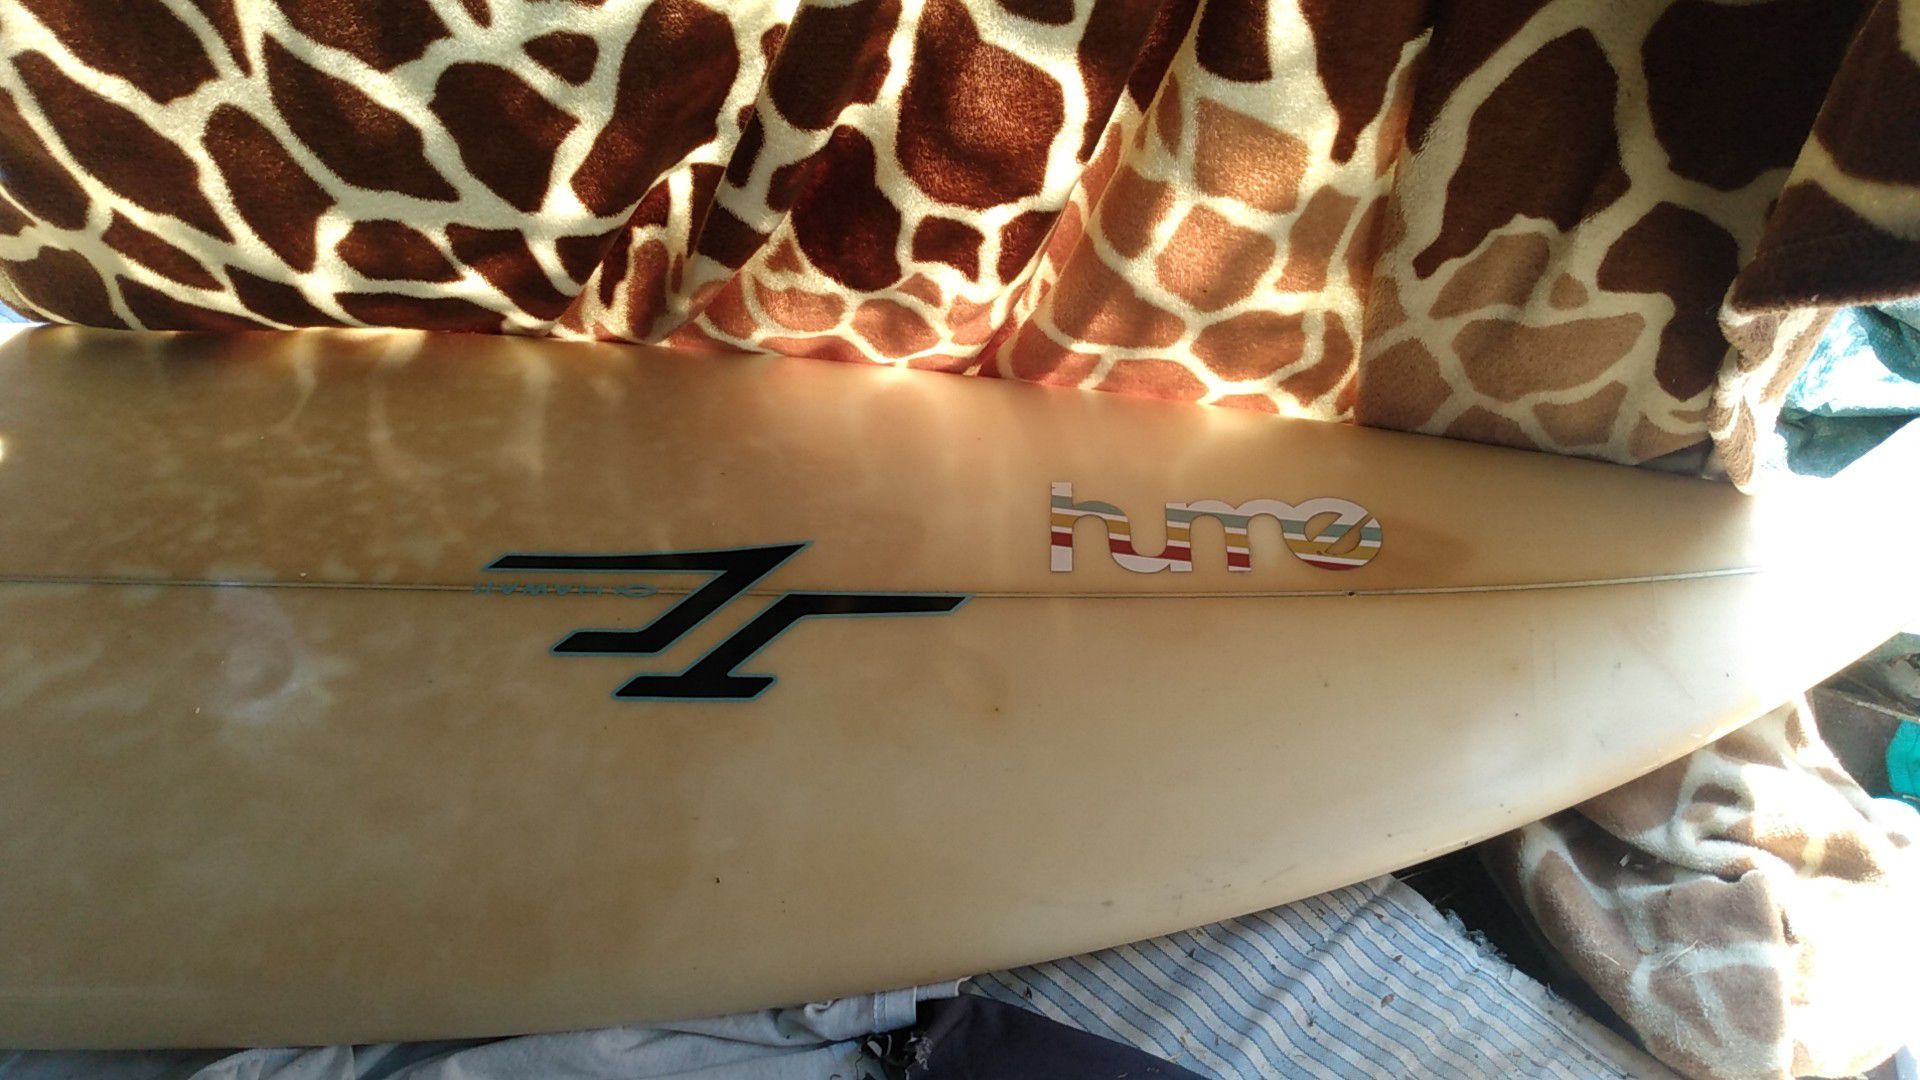 Shortboard surfboard Jc xc-1 surfboard 5"10 custom 3 removable skegs/fins